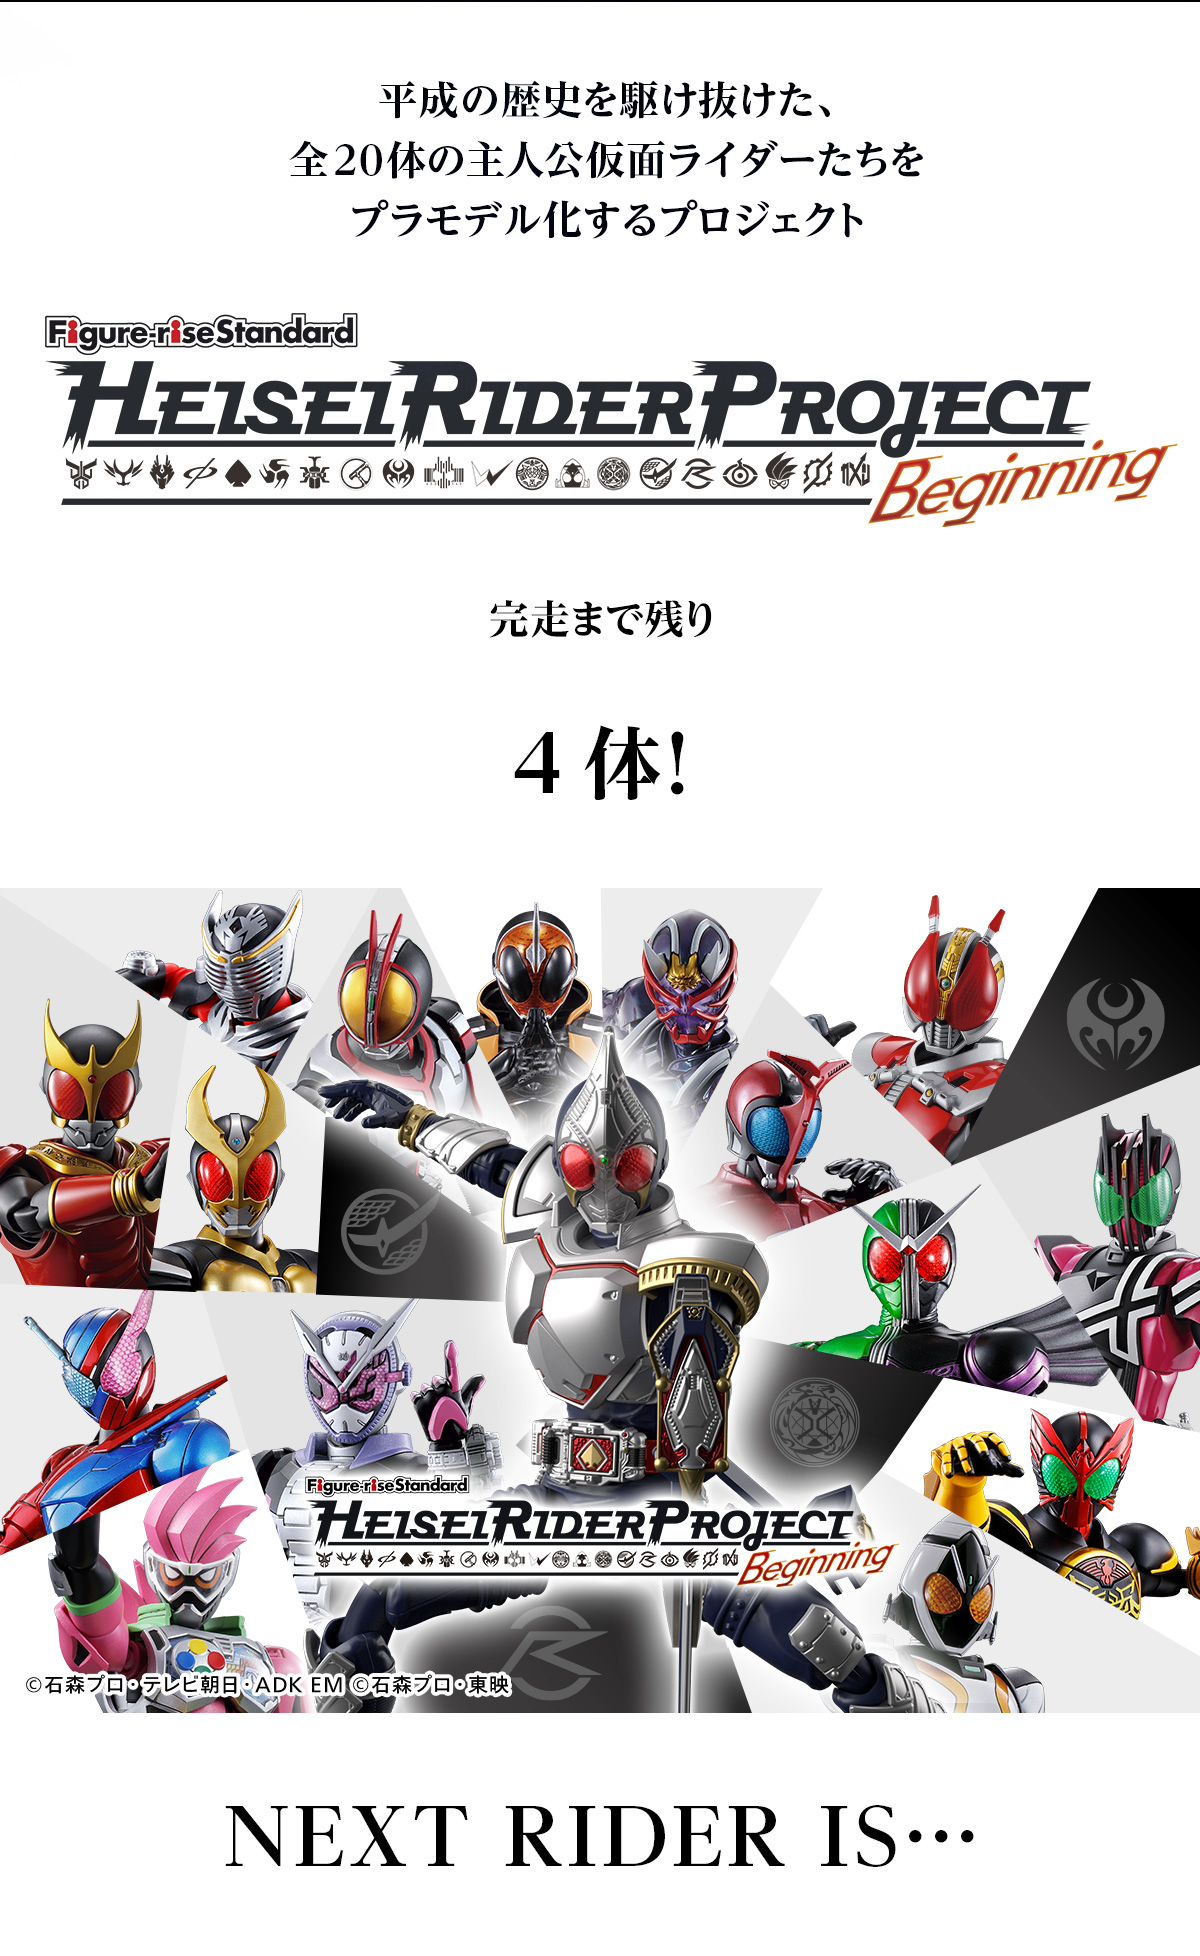 平成の歴史を駆け抜けた、全20体の主人公仮面ライダーたちをプラモデル化するプロジェクト Figure-rise Standard HEISEI RIDER PROJECT Beginning 完走まで残り4体！ NEXT RIDER IS・・・